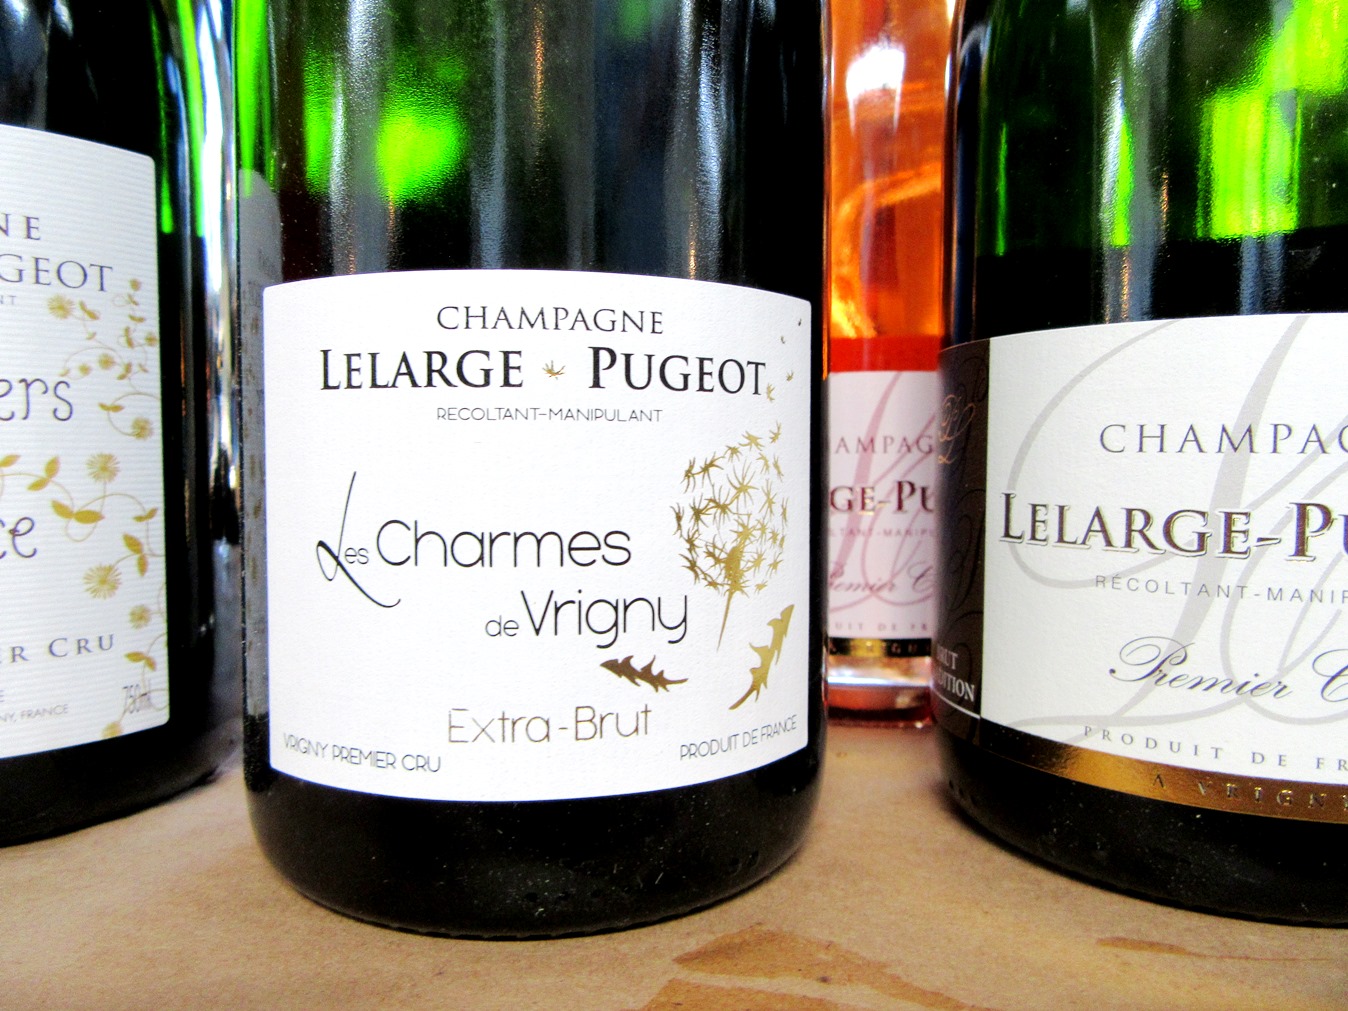 Lelarge-Pugeot, Les Charmes de Vrigny Premier Cru Extra Brut, Champagne, France, Wine Casual